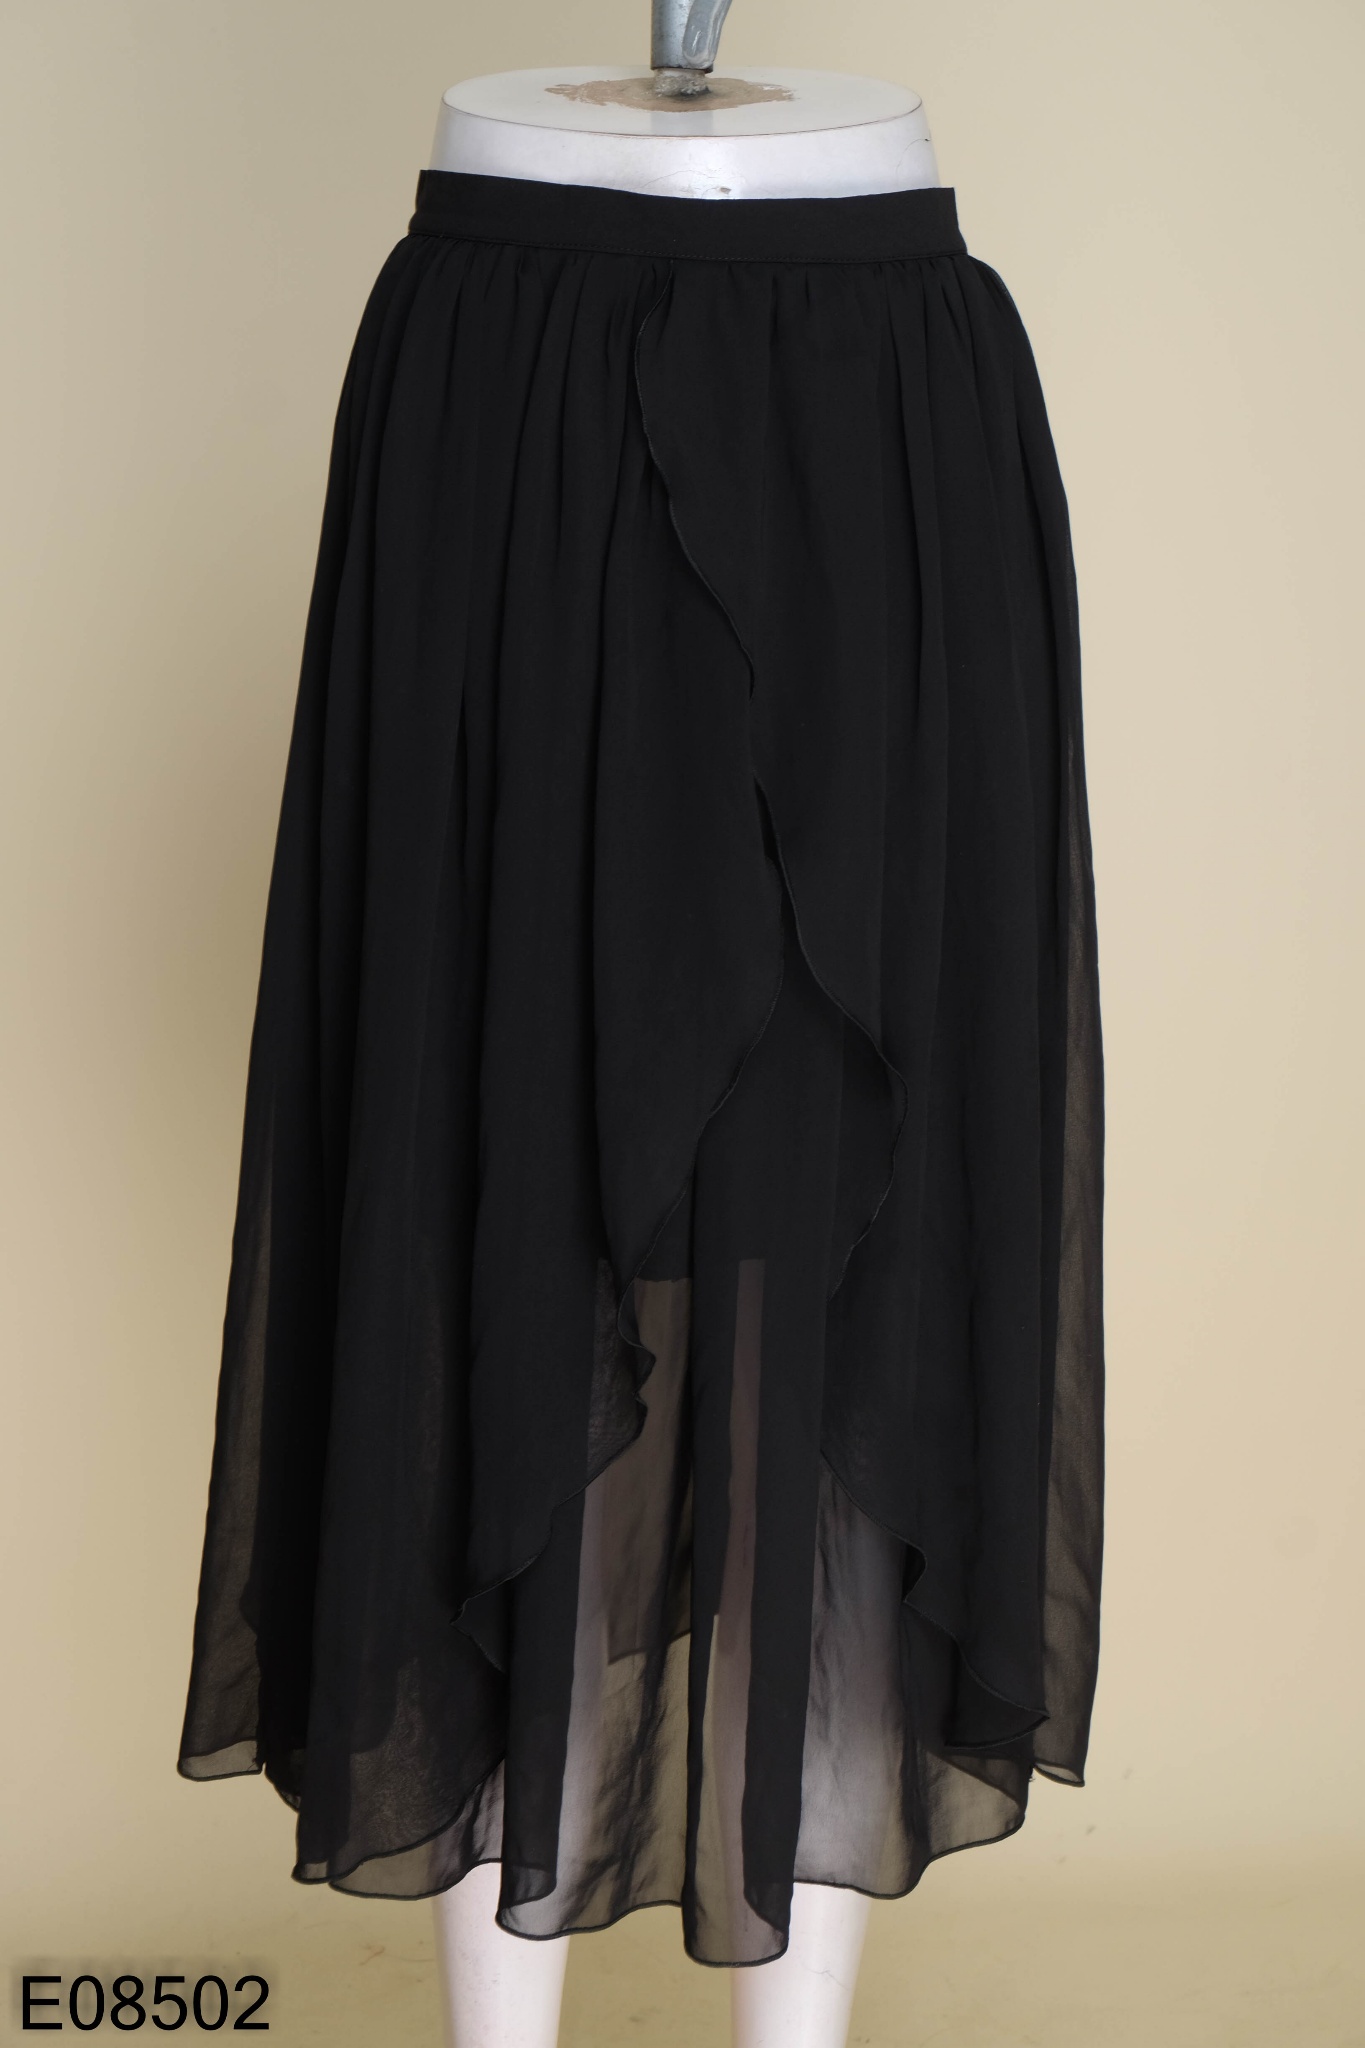 Chân Váy Dài Váy Voan Phối Góc Chéo Cảm Giác Thiết Kế Thiểu Số Phong Cách  Đen Tối Lạnh Lùng Tự Thiết Kế Váy Bồng Thon Gọn Eo Cao | Lazada.vn